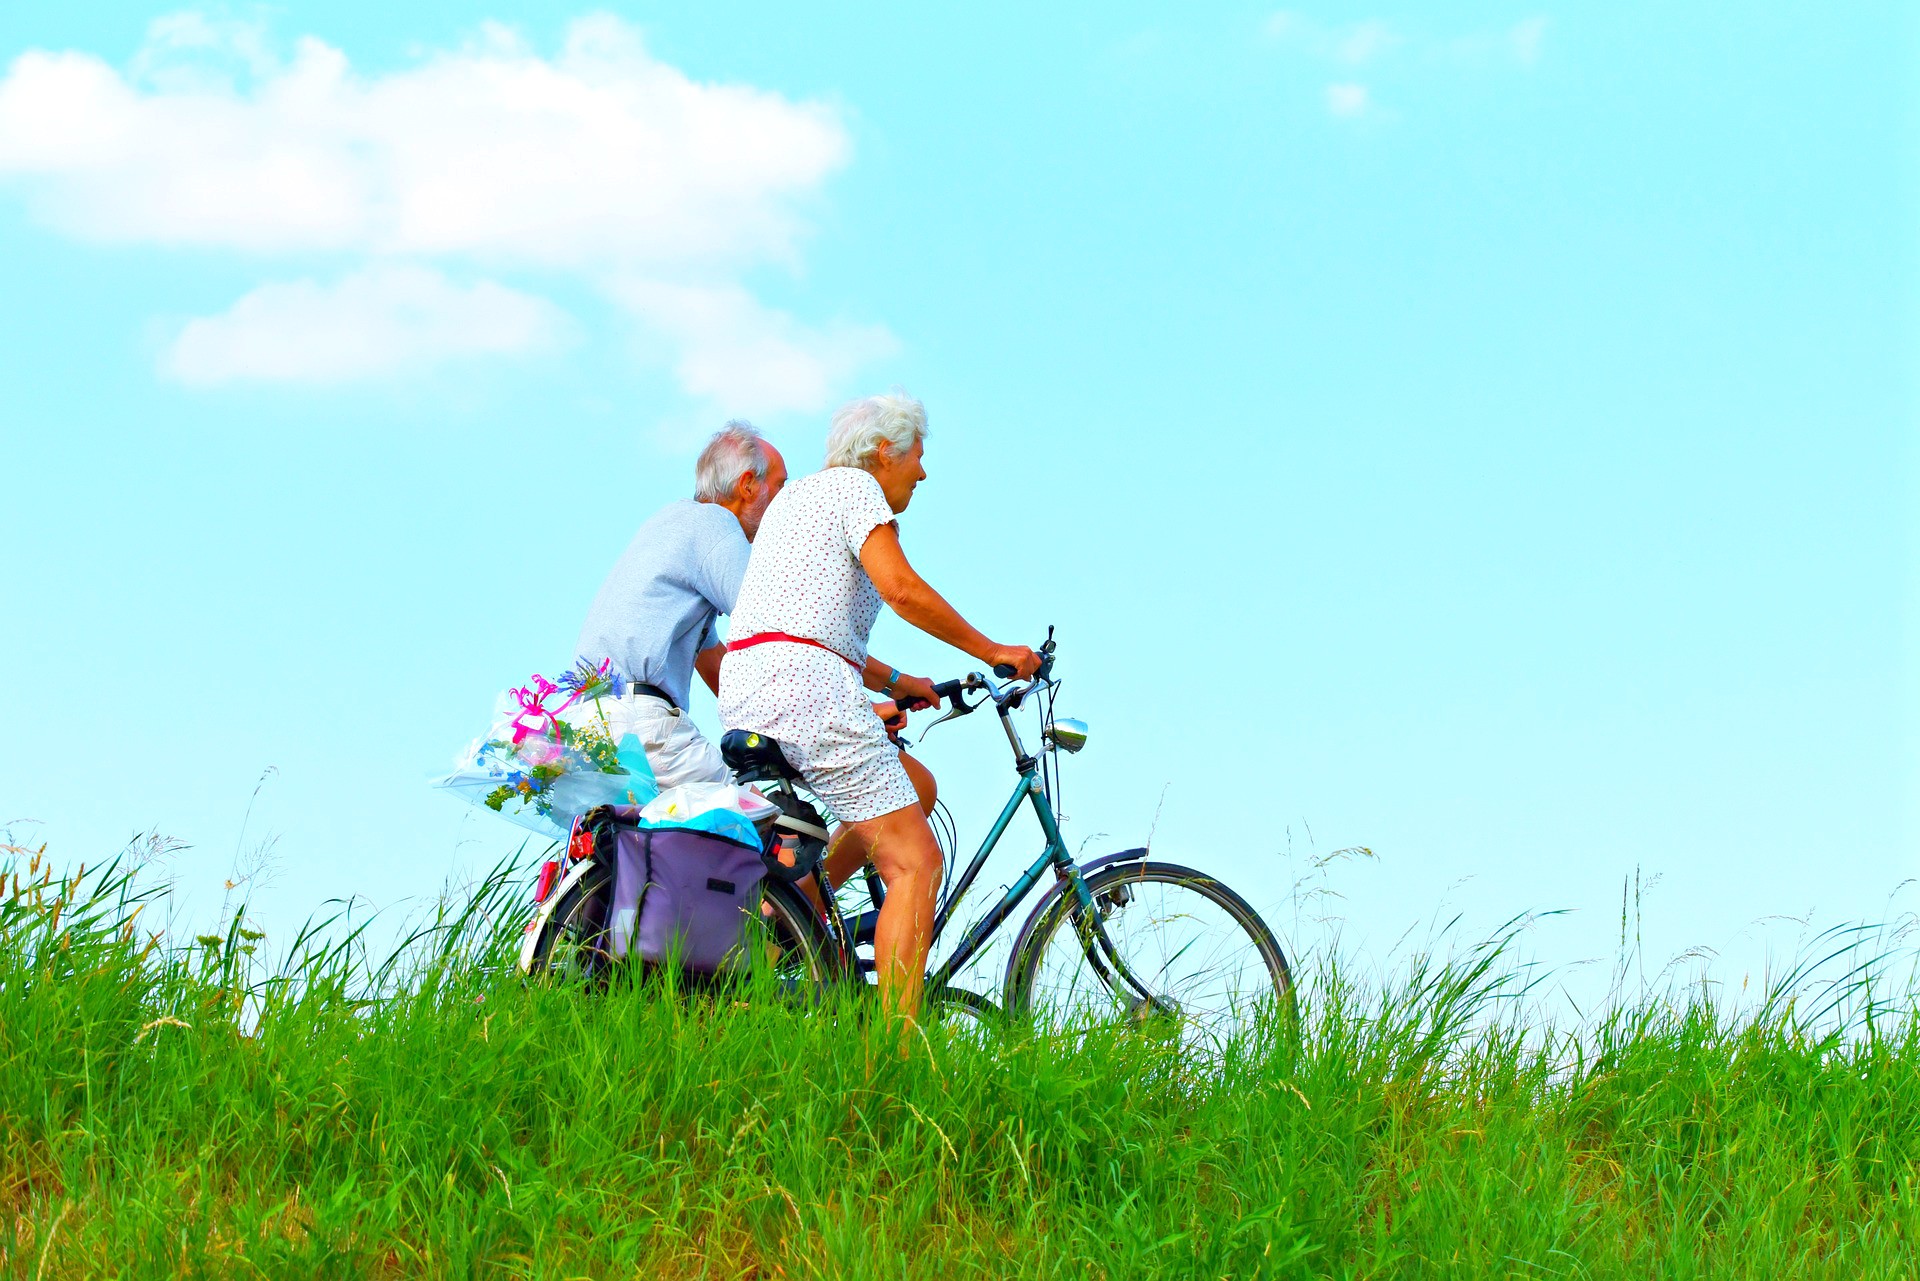  <img src="elderly.jpg" alt="elderly couple on bikes wiith a sunny sky"/> 